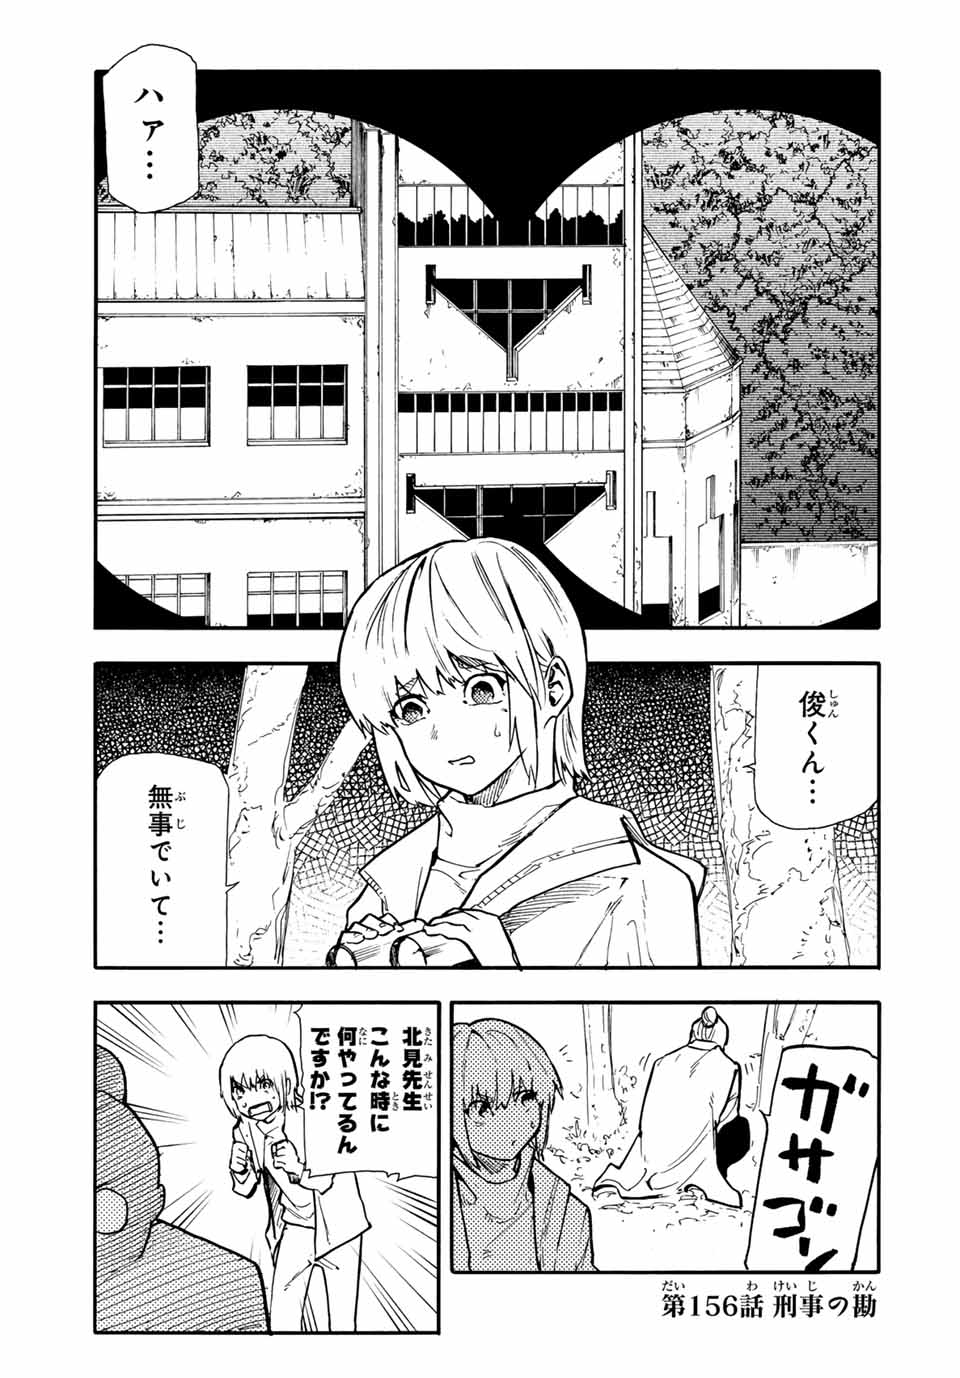 Juujika no Rokunin - Chapter 156 - Page 1